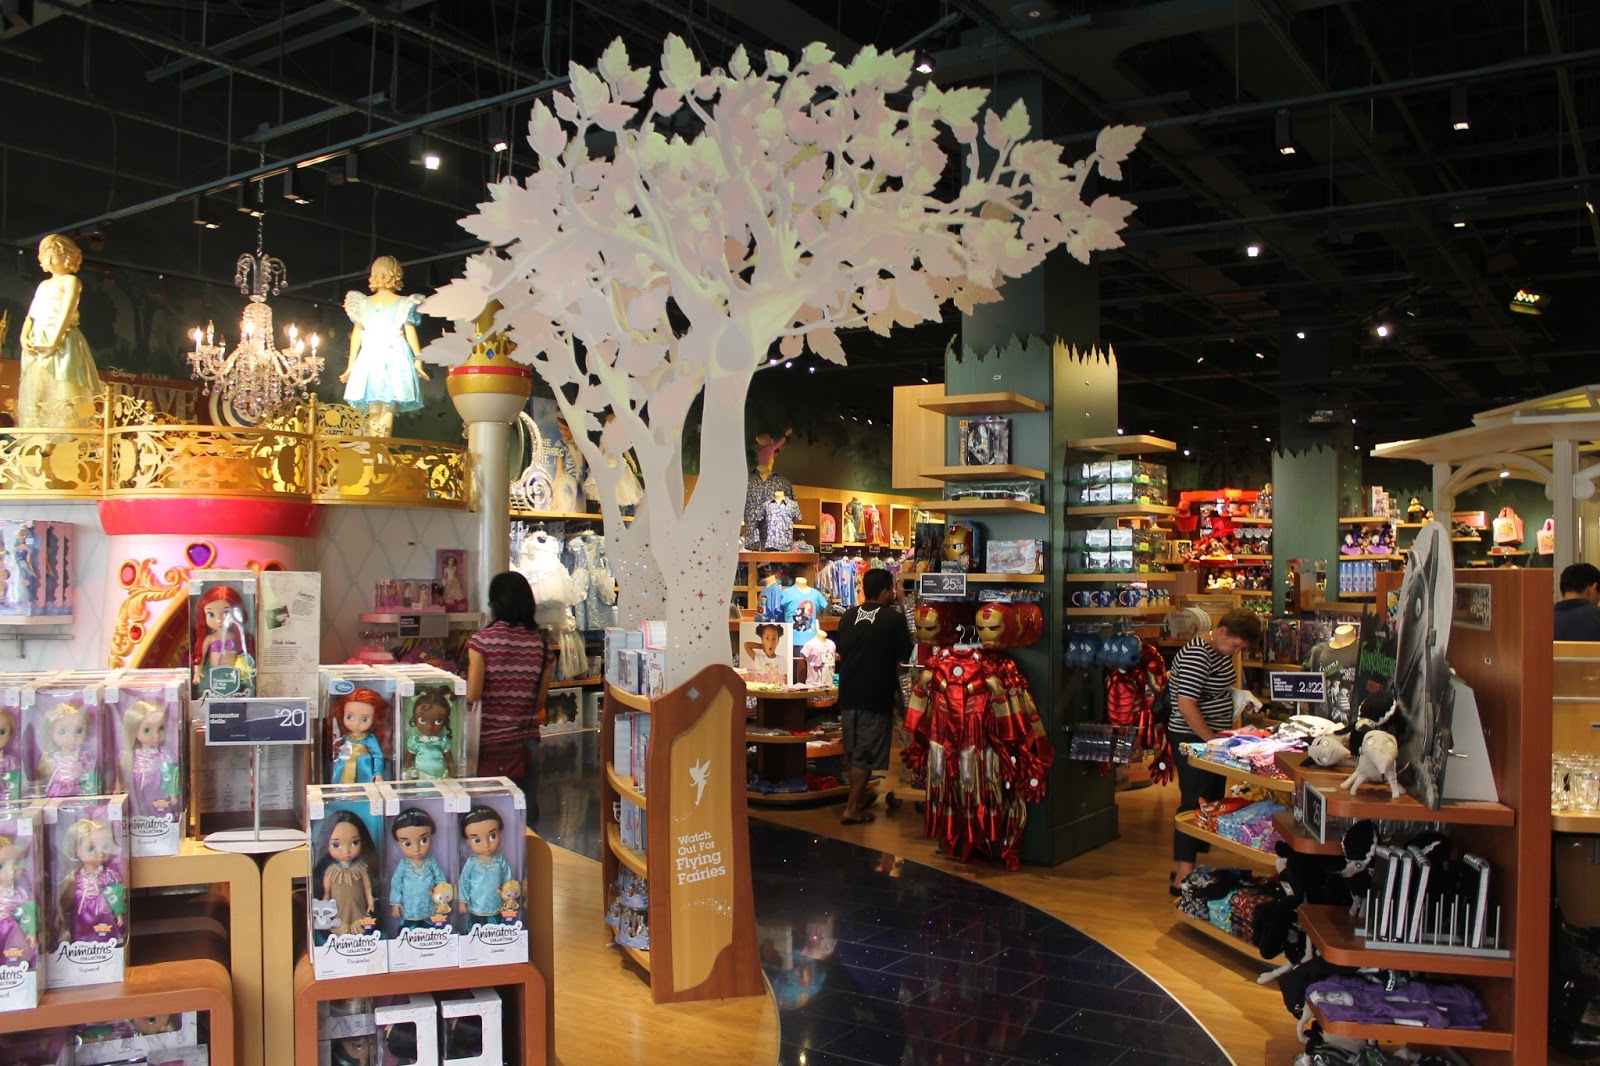 October 20, 2012 Disney Store At The Ala Moana Shopping